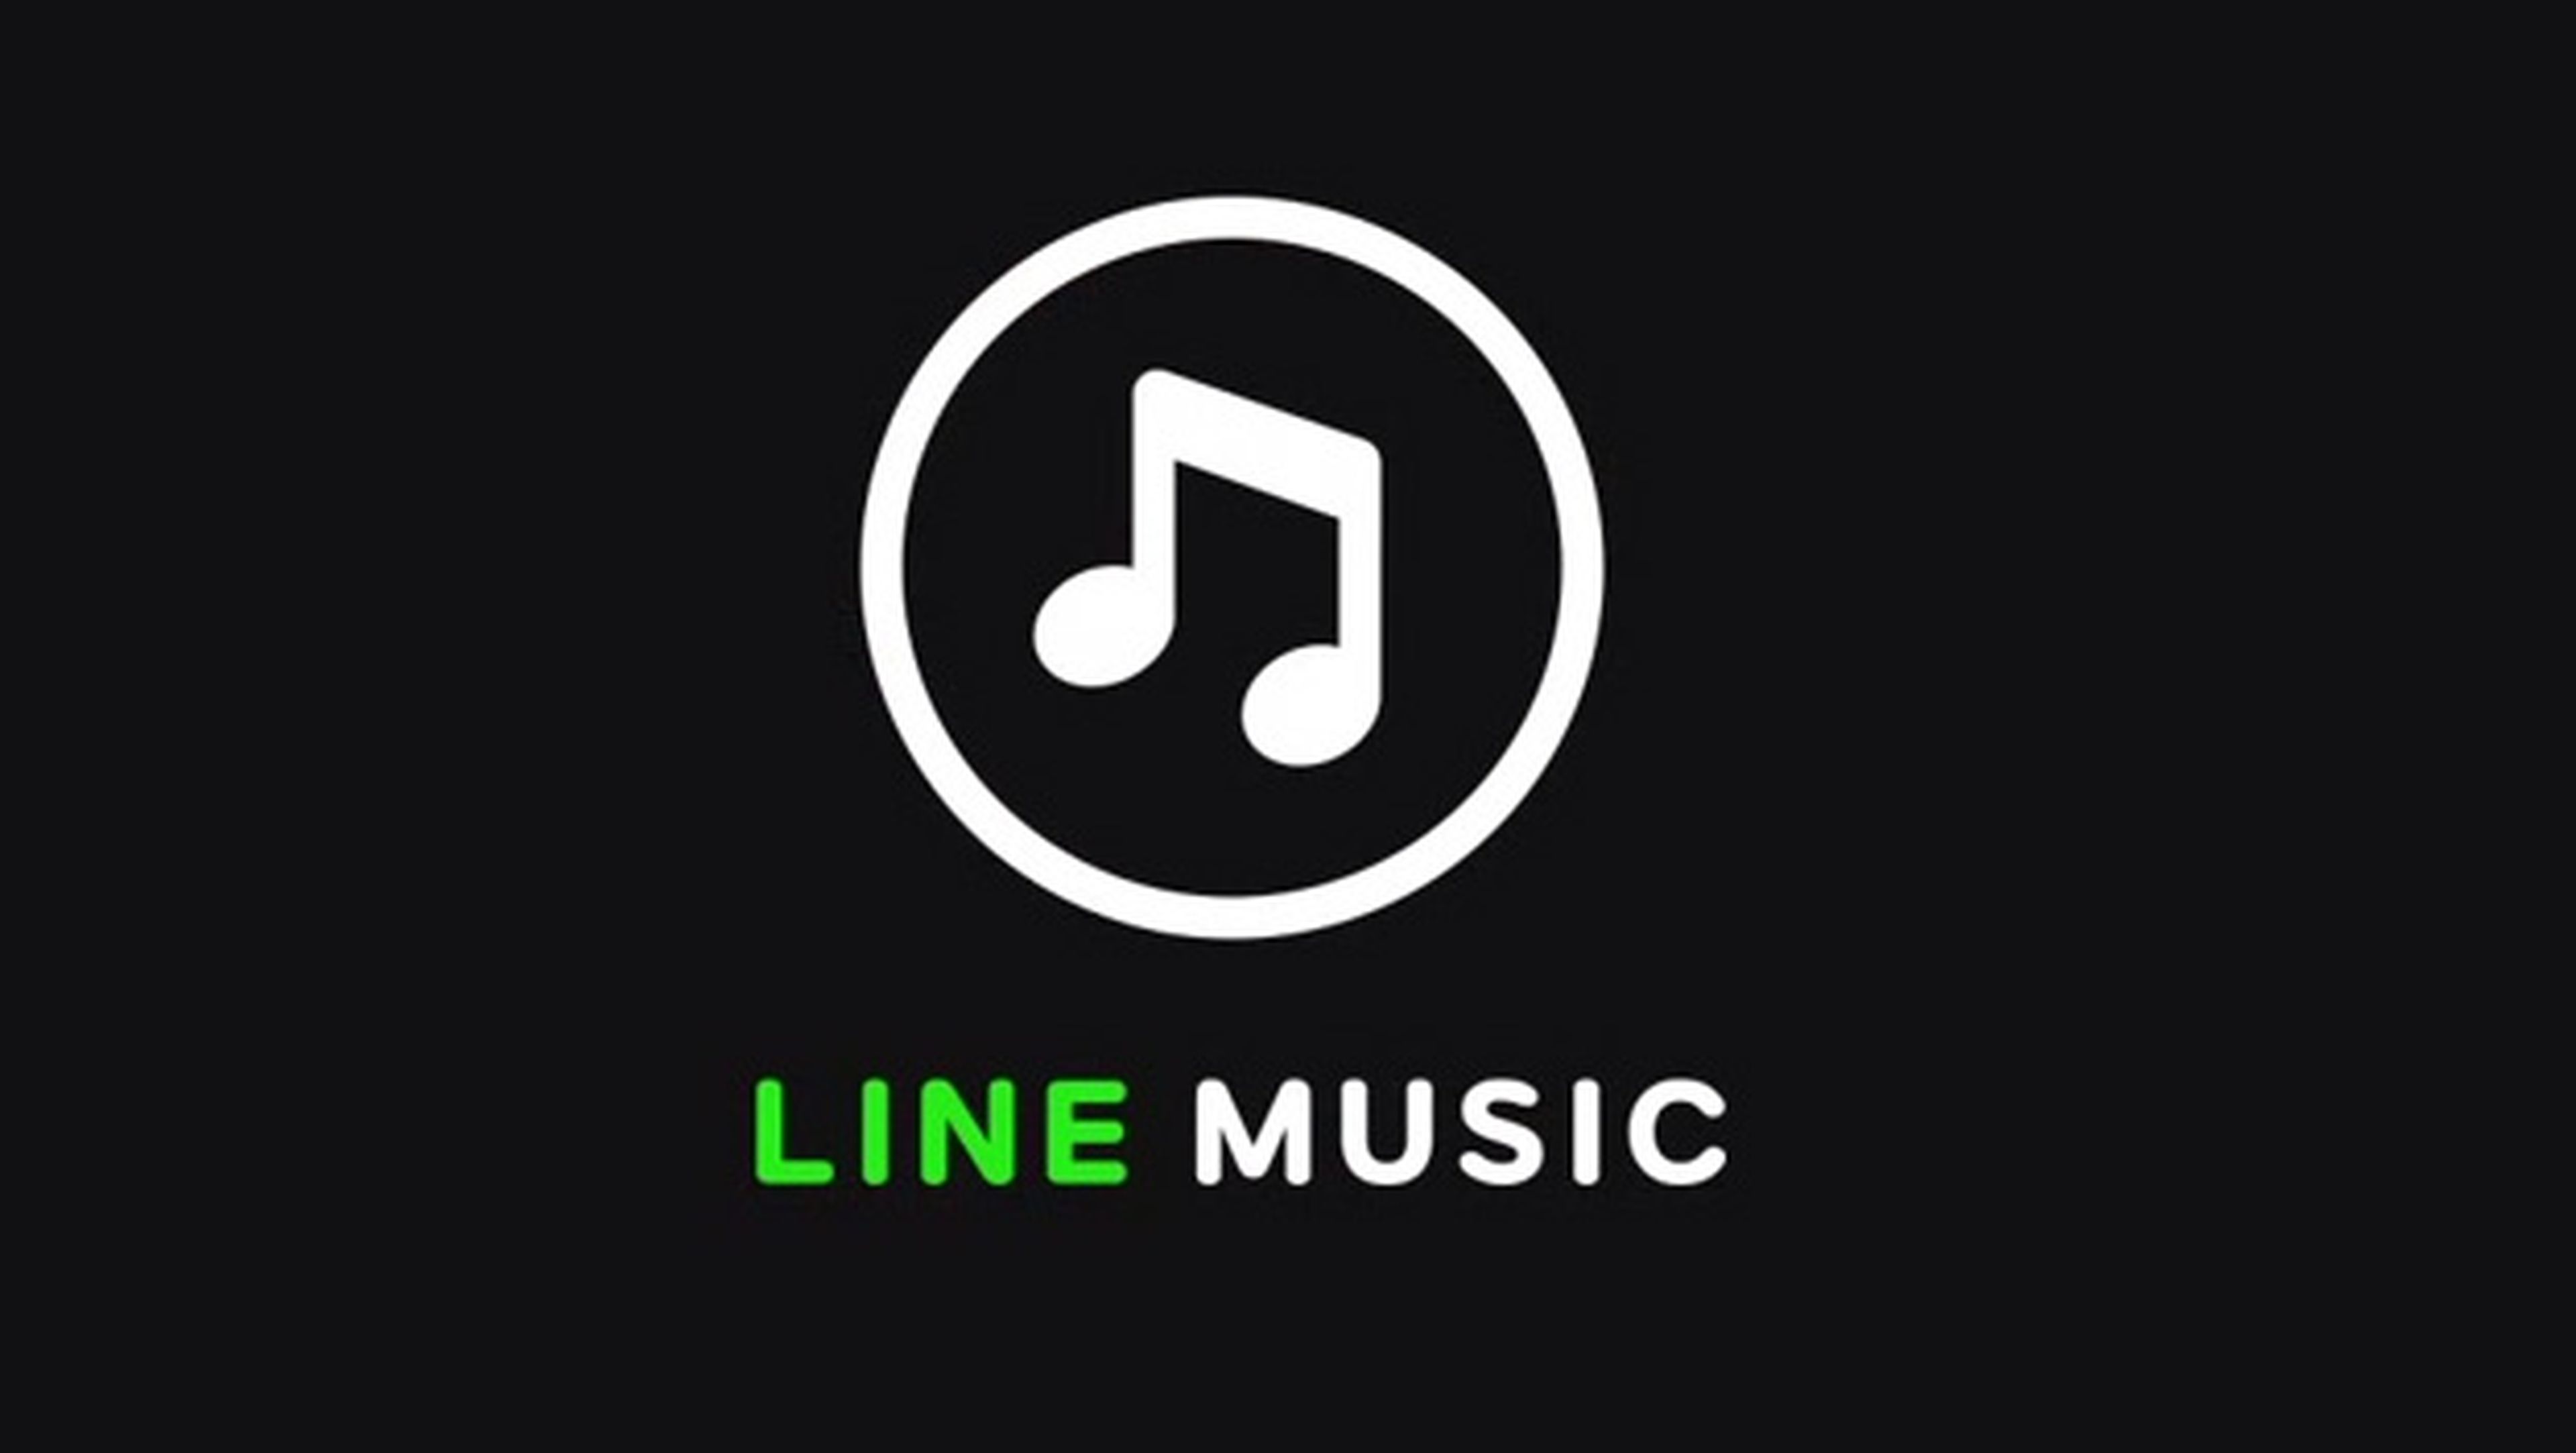 Line Music servicio streaming música disponible Japón